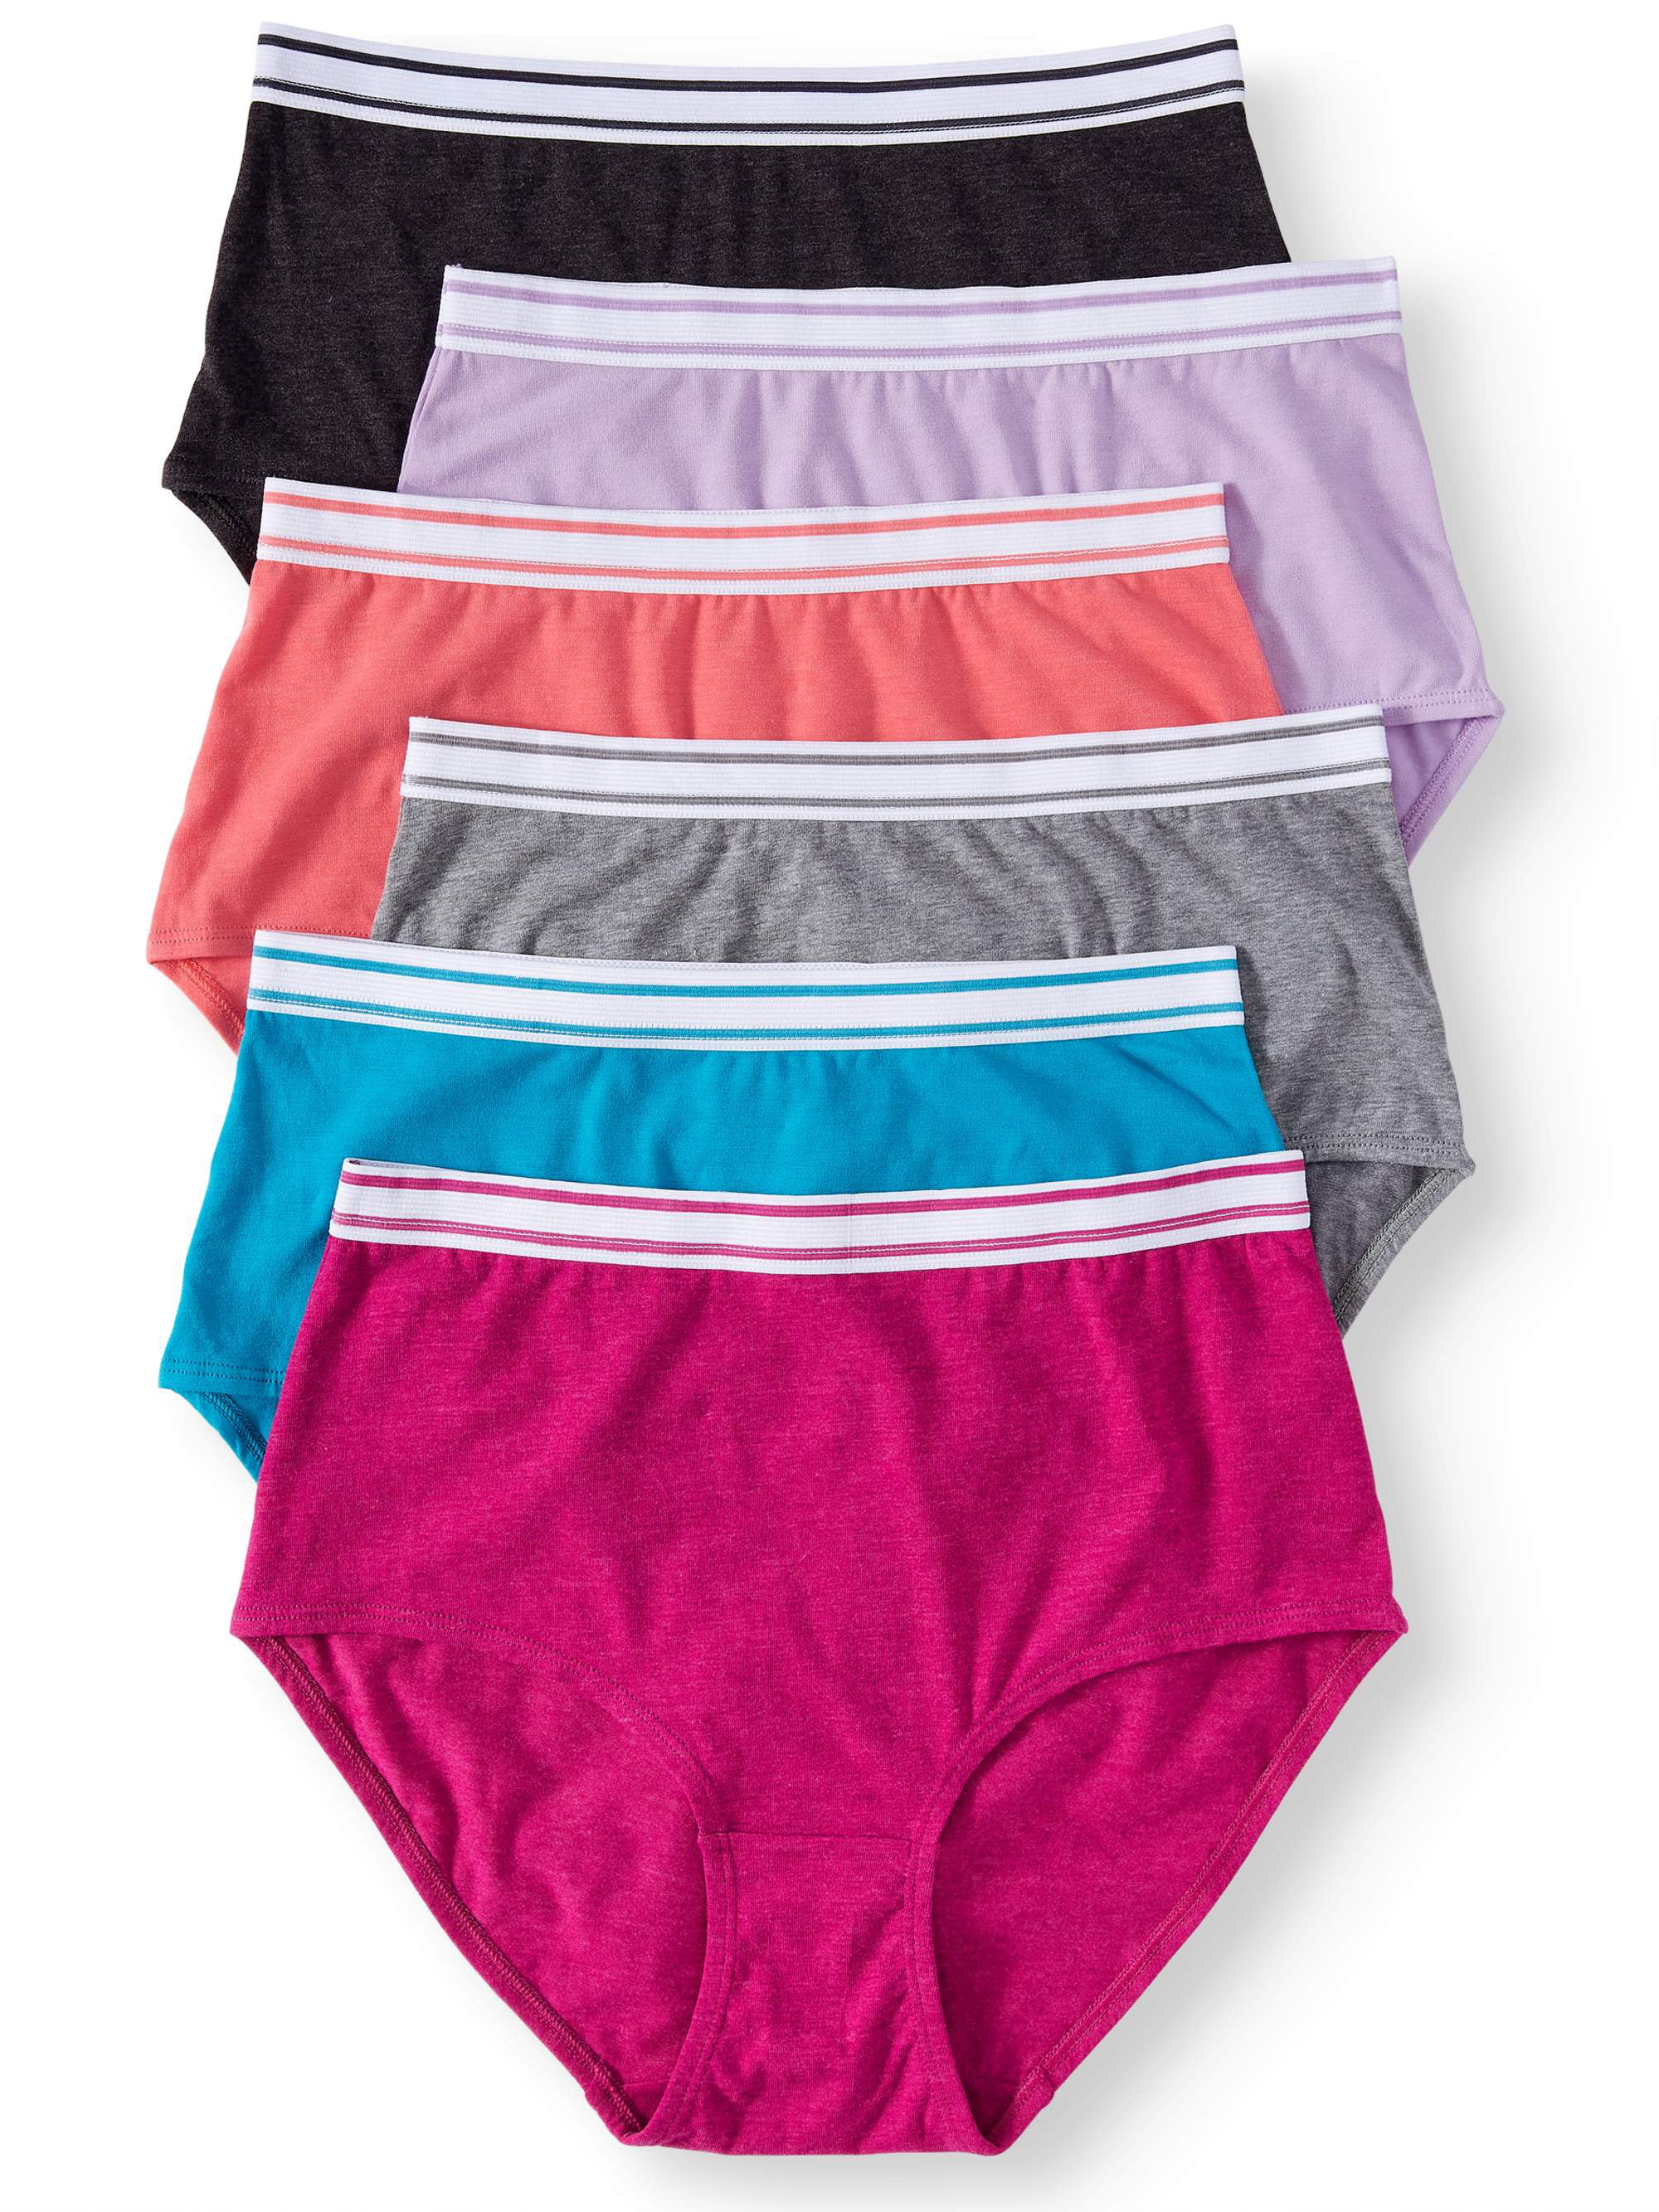 NEW SECRET TREASURES 6-Pair Women's Hipster Underwear Panties Cotton Sz 7  LARGE $9.95 - PicClick